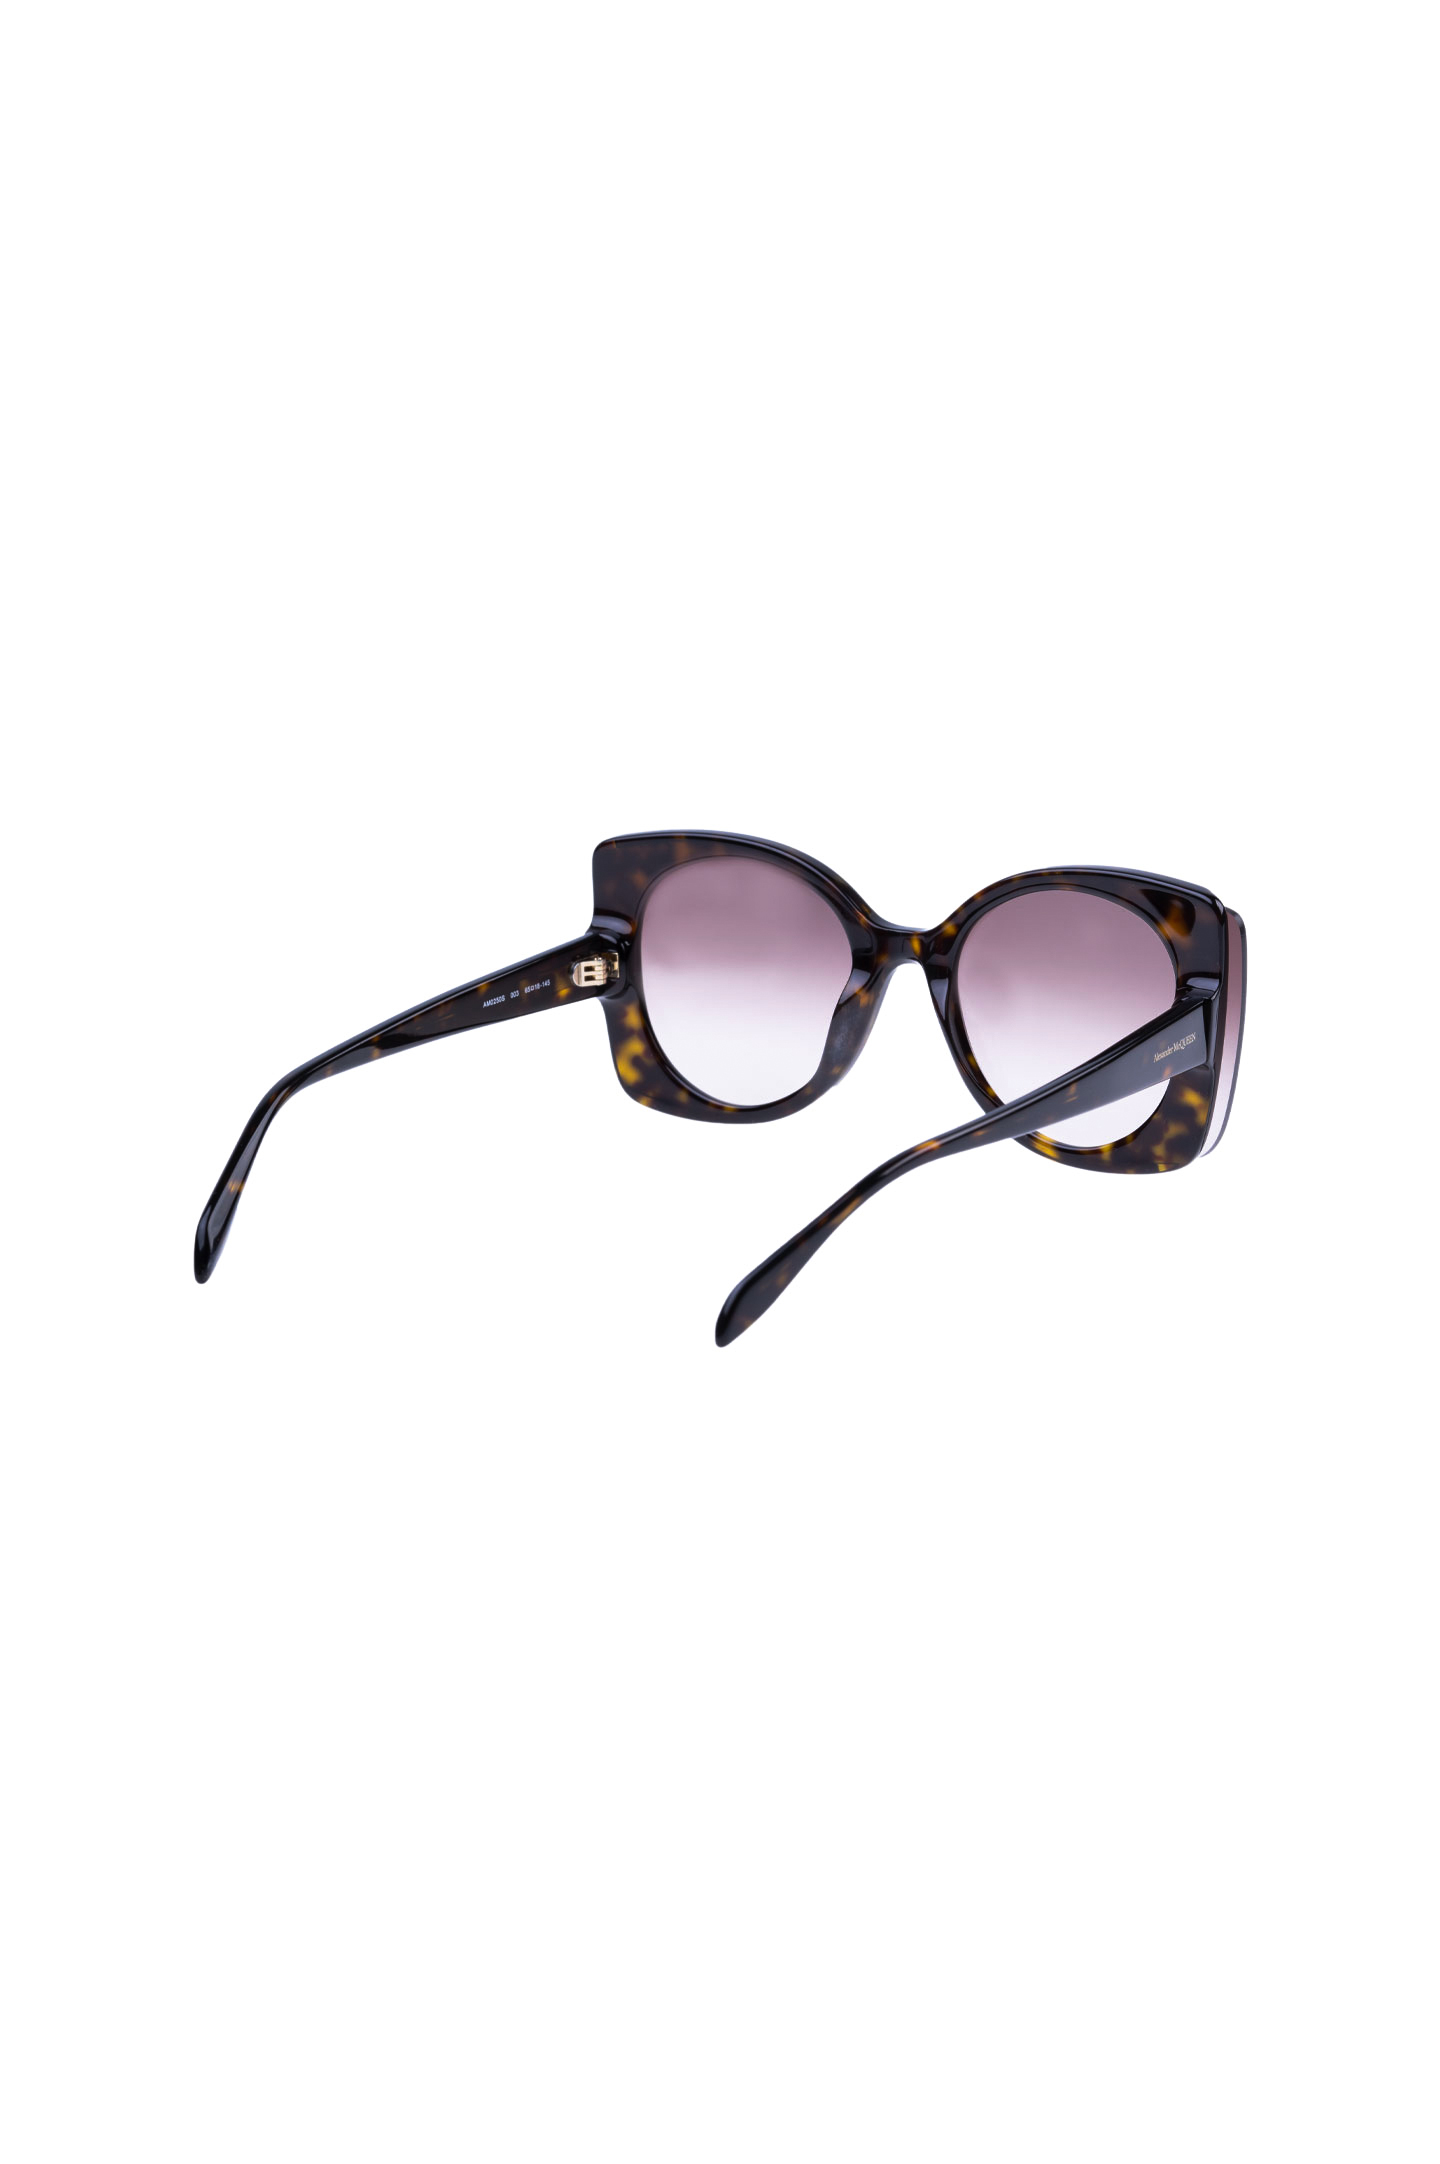 Солнцезащитные очки ALEXANDER MCQUEEN 611099 J0740, цвет: Коричневый, Женский